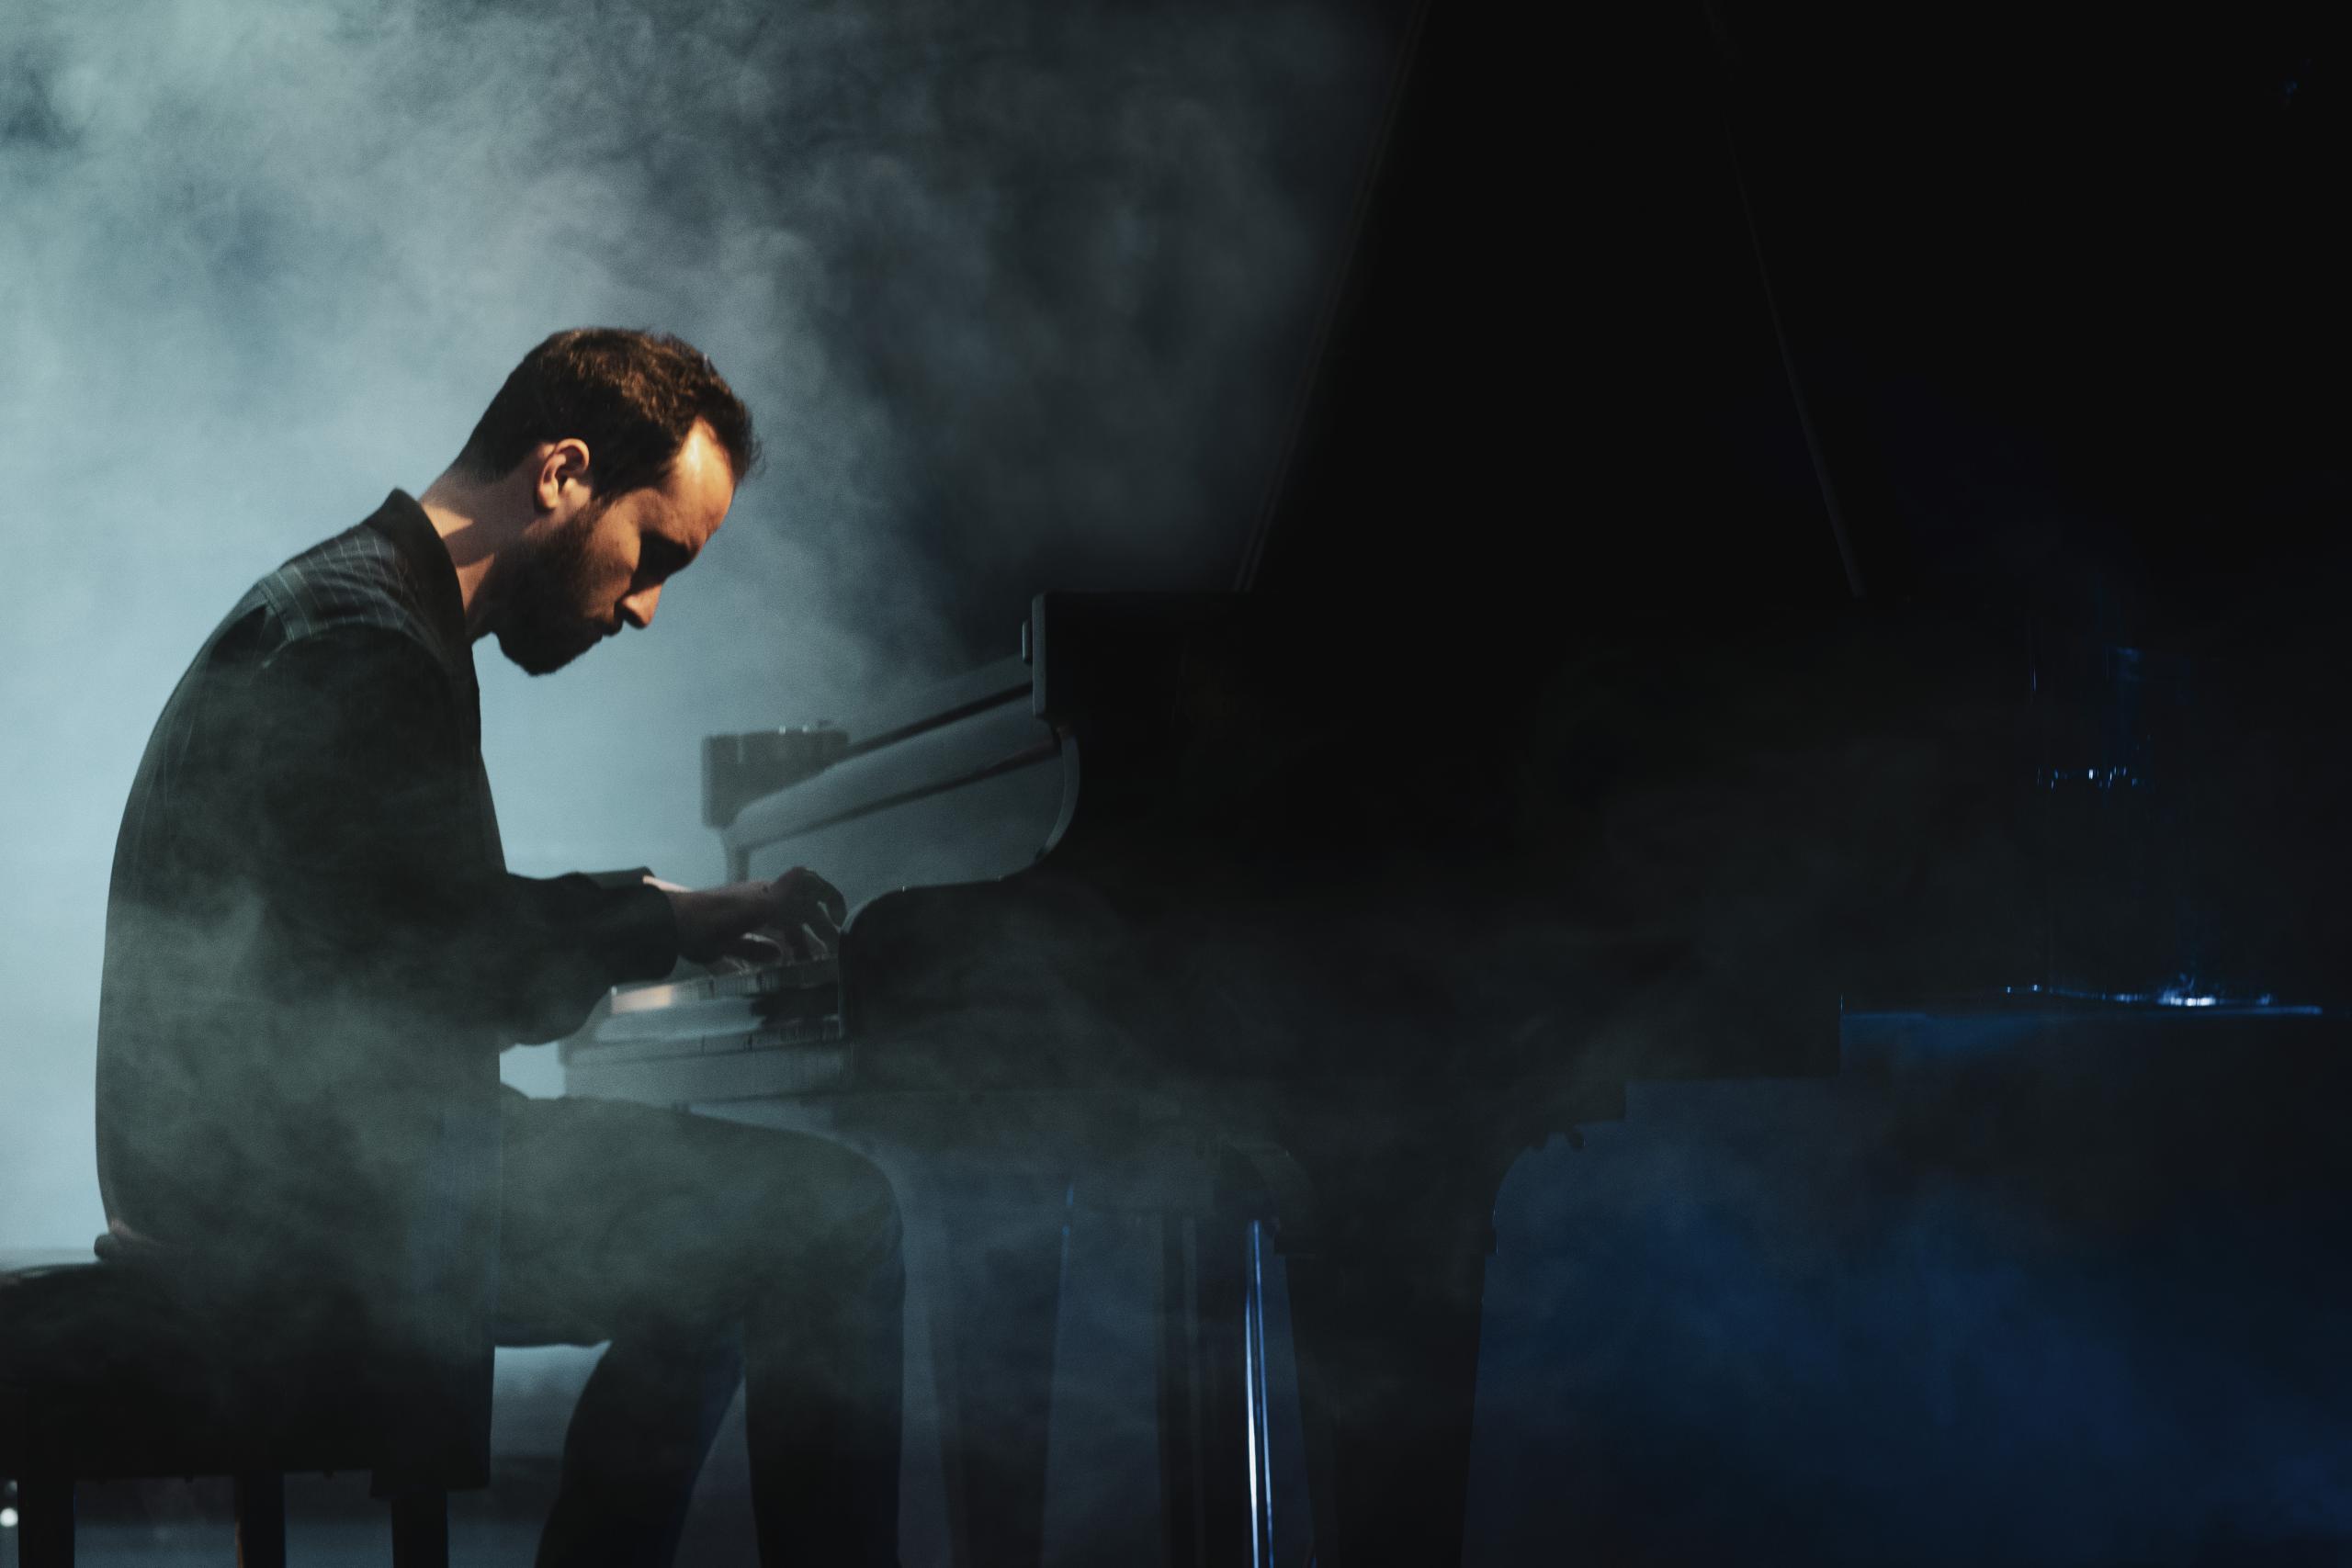 Der Pianist Igor Levit auf der Bühne am Flügel. Das Bild ist von der Seite aufgenommen, um ihn herum Nebel.